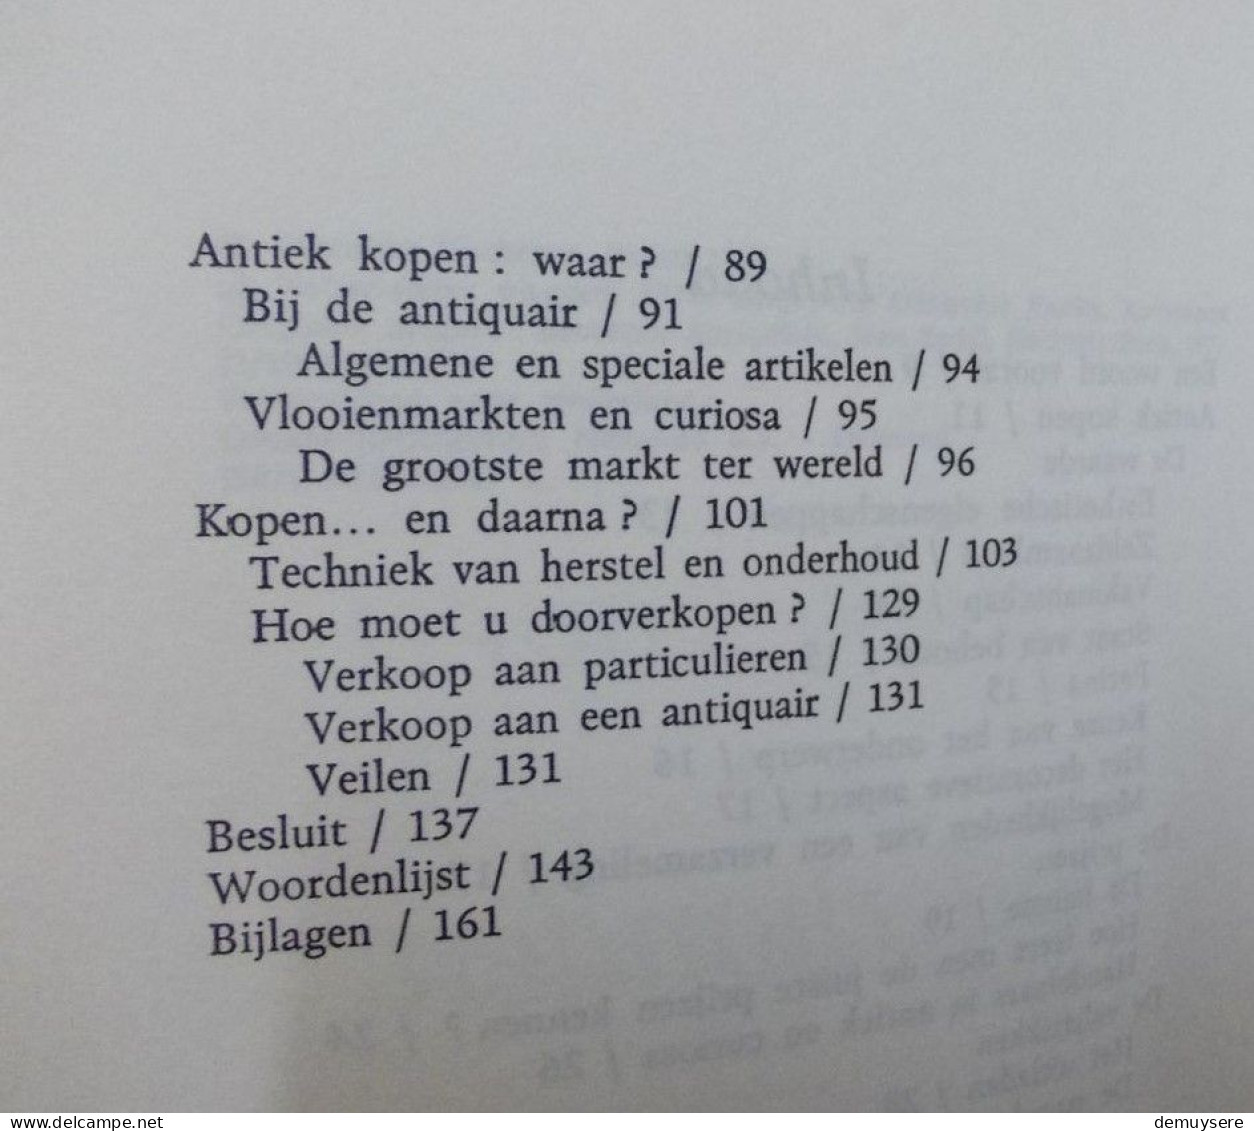 LADE Q - ANTIEK KOPEN &  ONDERHOUDEN - JEAN BEDEL - 170 BLZ. - 1977 - Riviste & Cataloghi